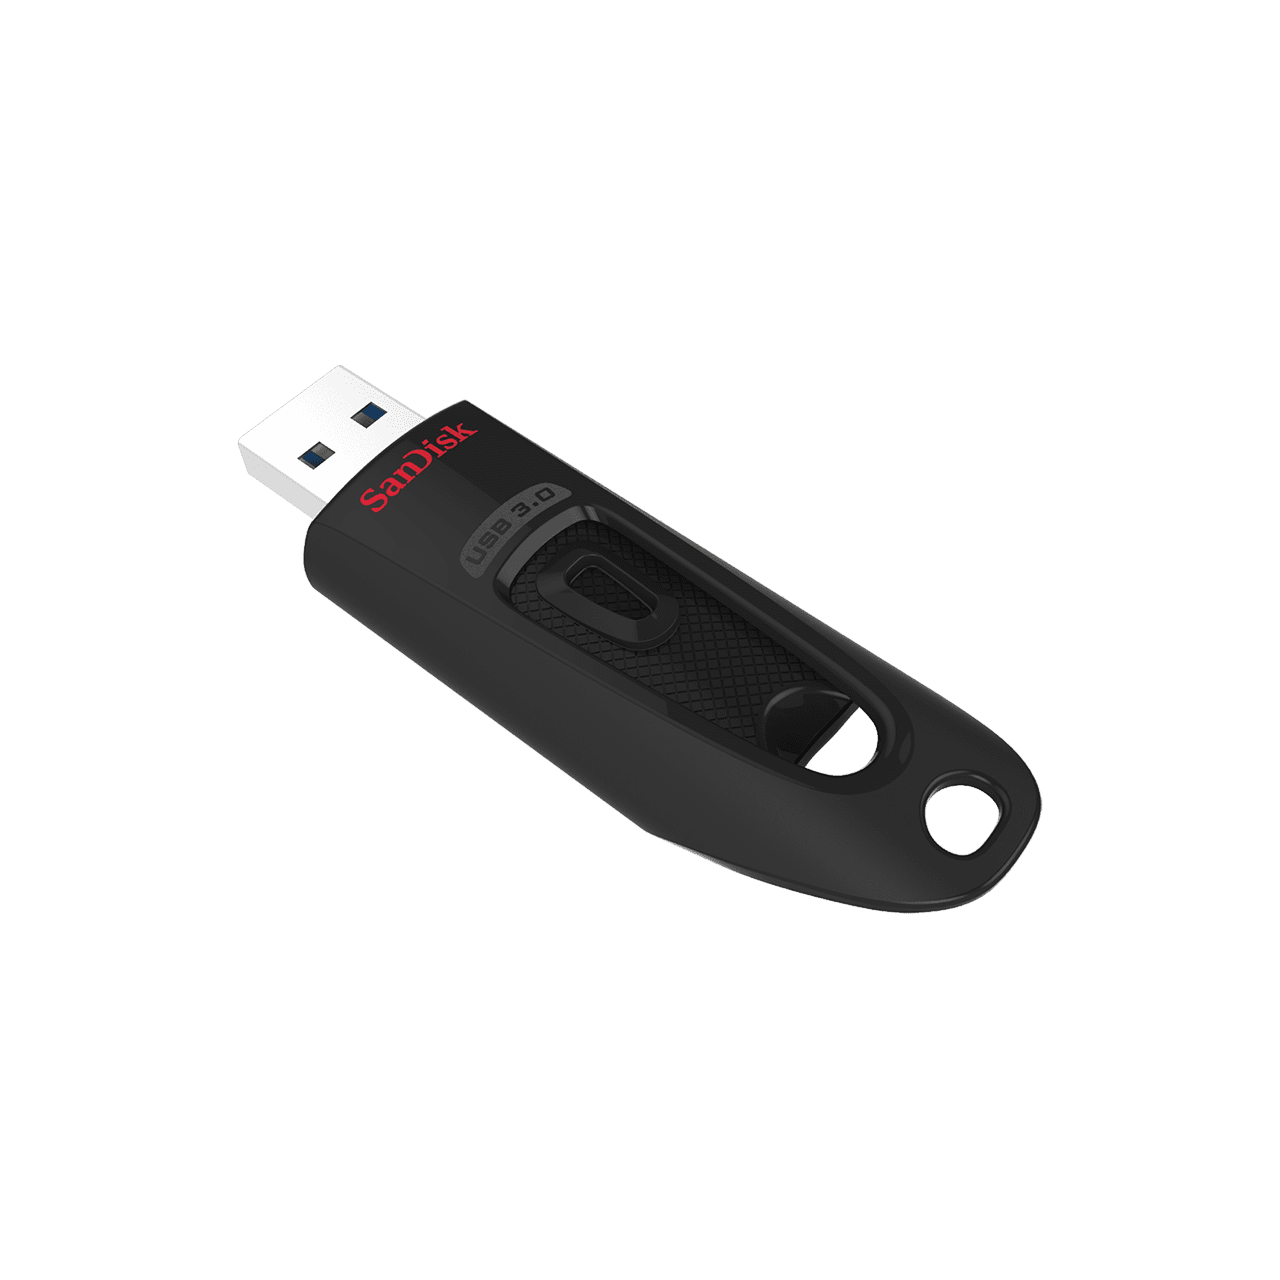 Bild von Ultra 16 GB schwarz USB 3.0